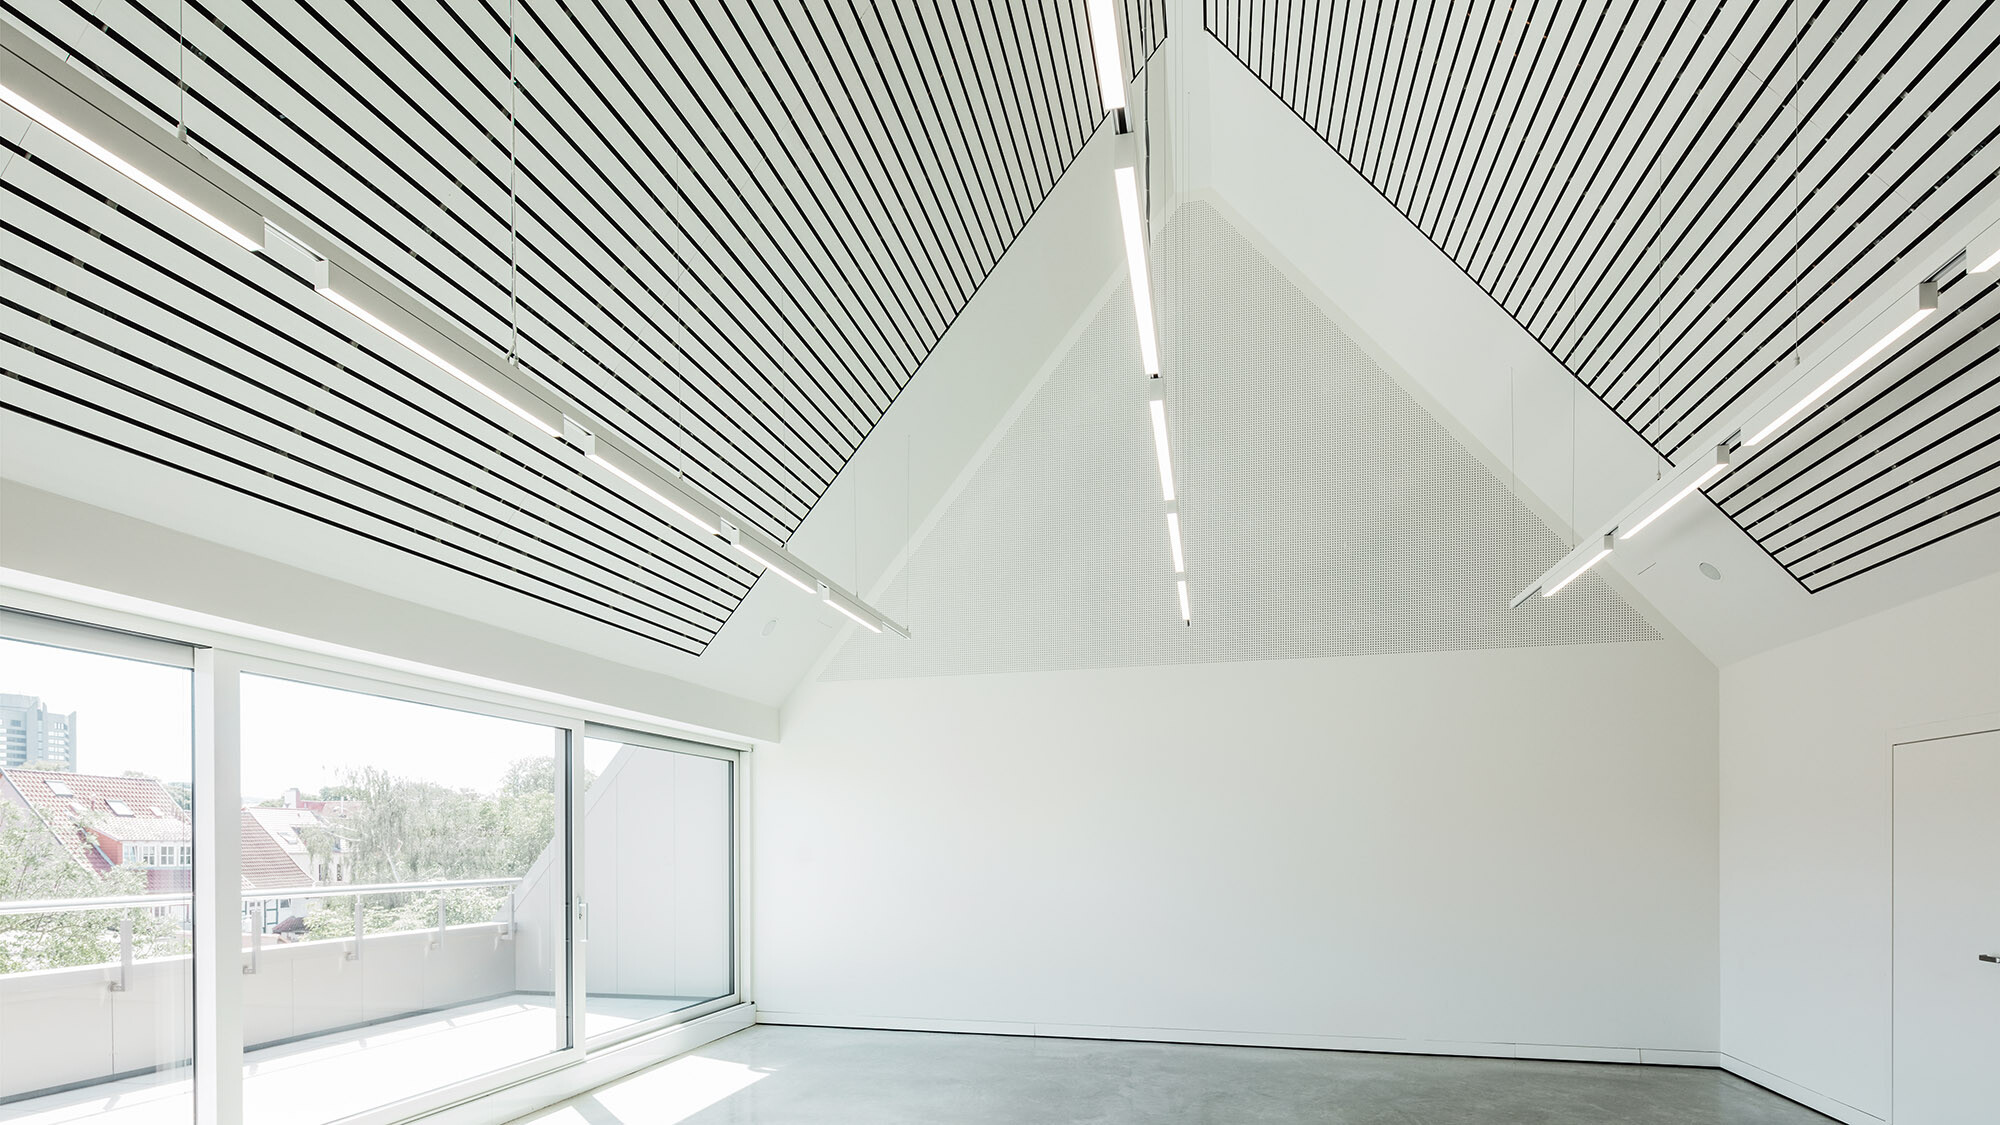 Ein Blick ins vollständig in Weiß gehaltene Interieur des Kunsthauses mit einer Beleuchtung an der Decke.